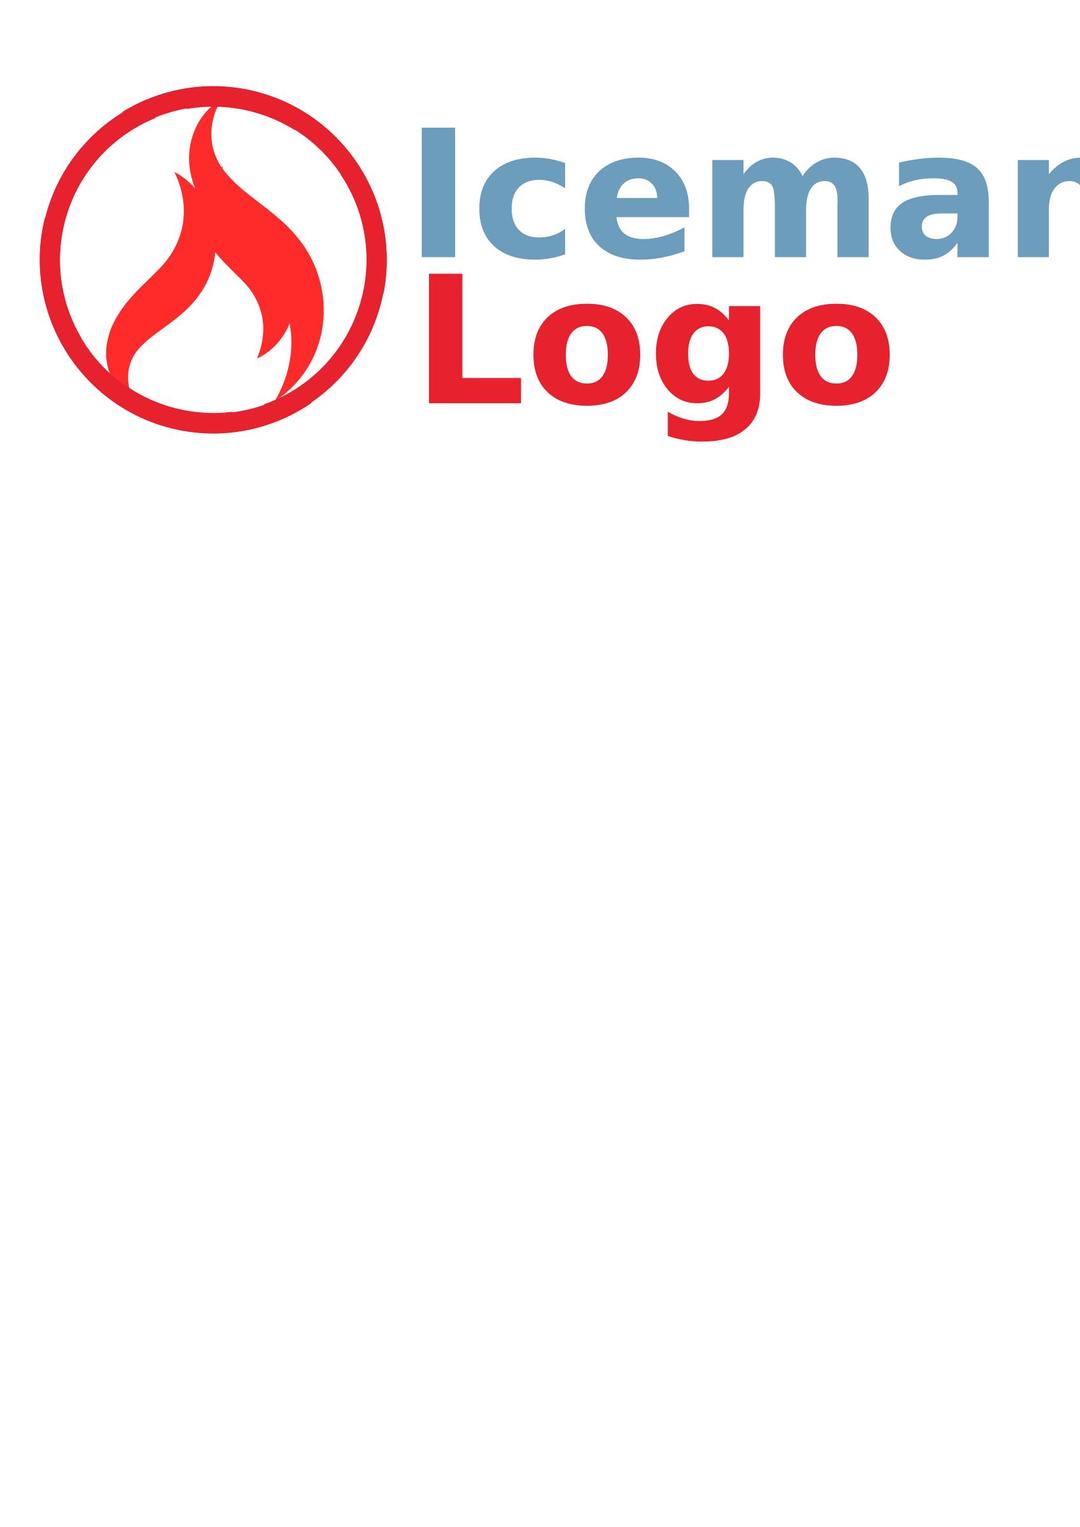 Flame logo png transparent